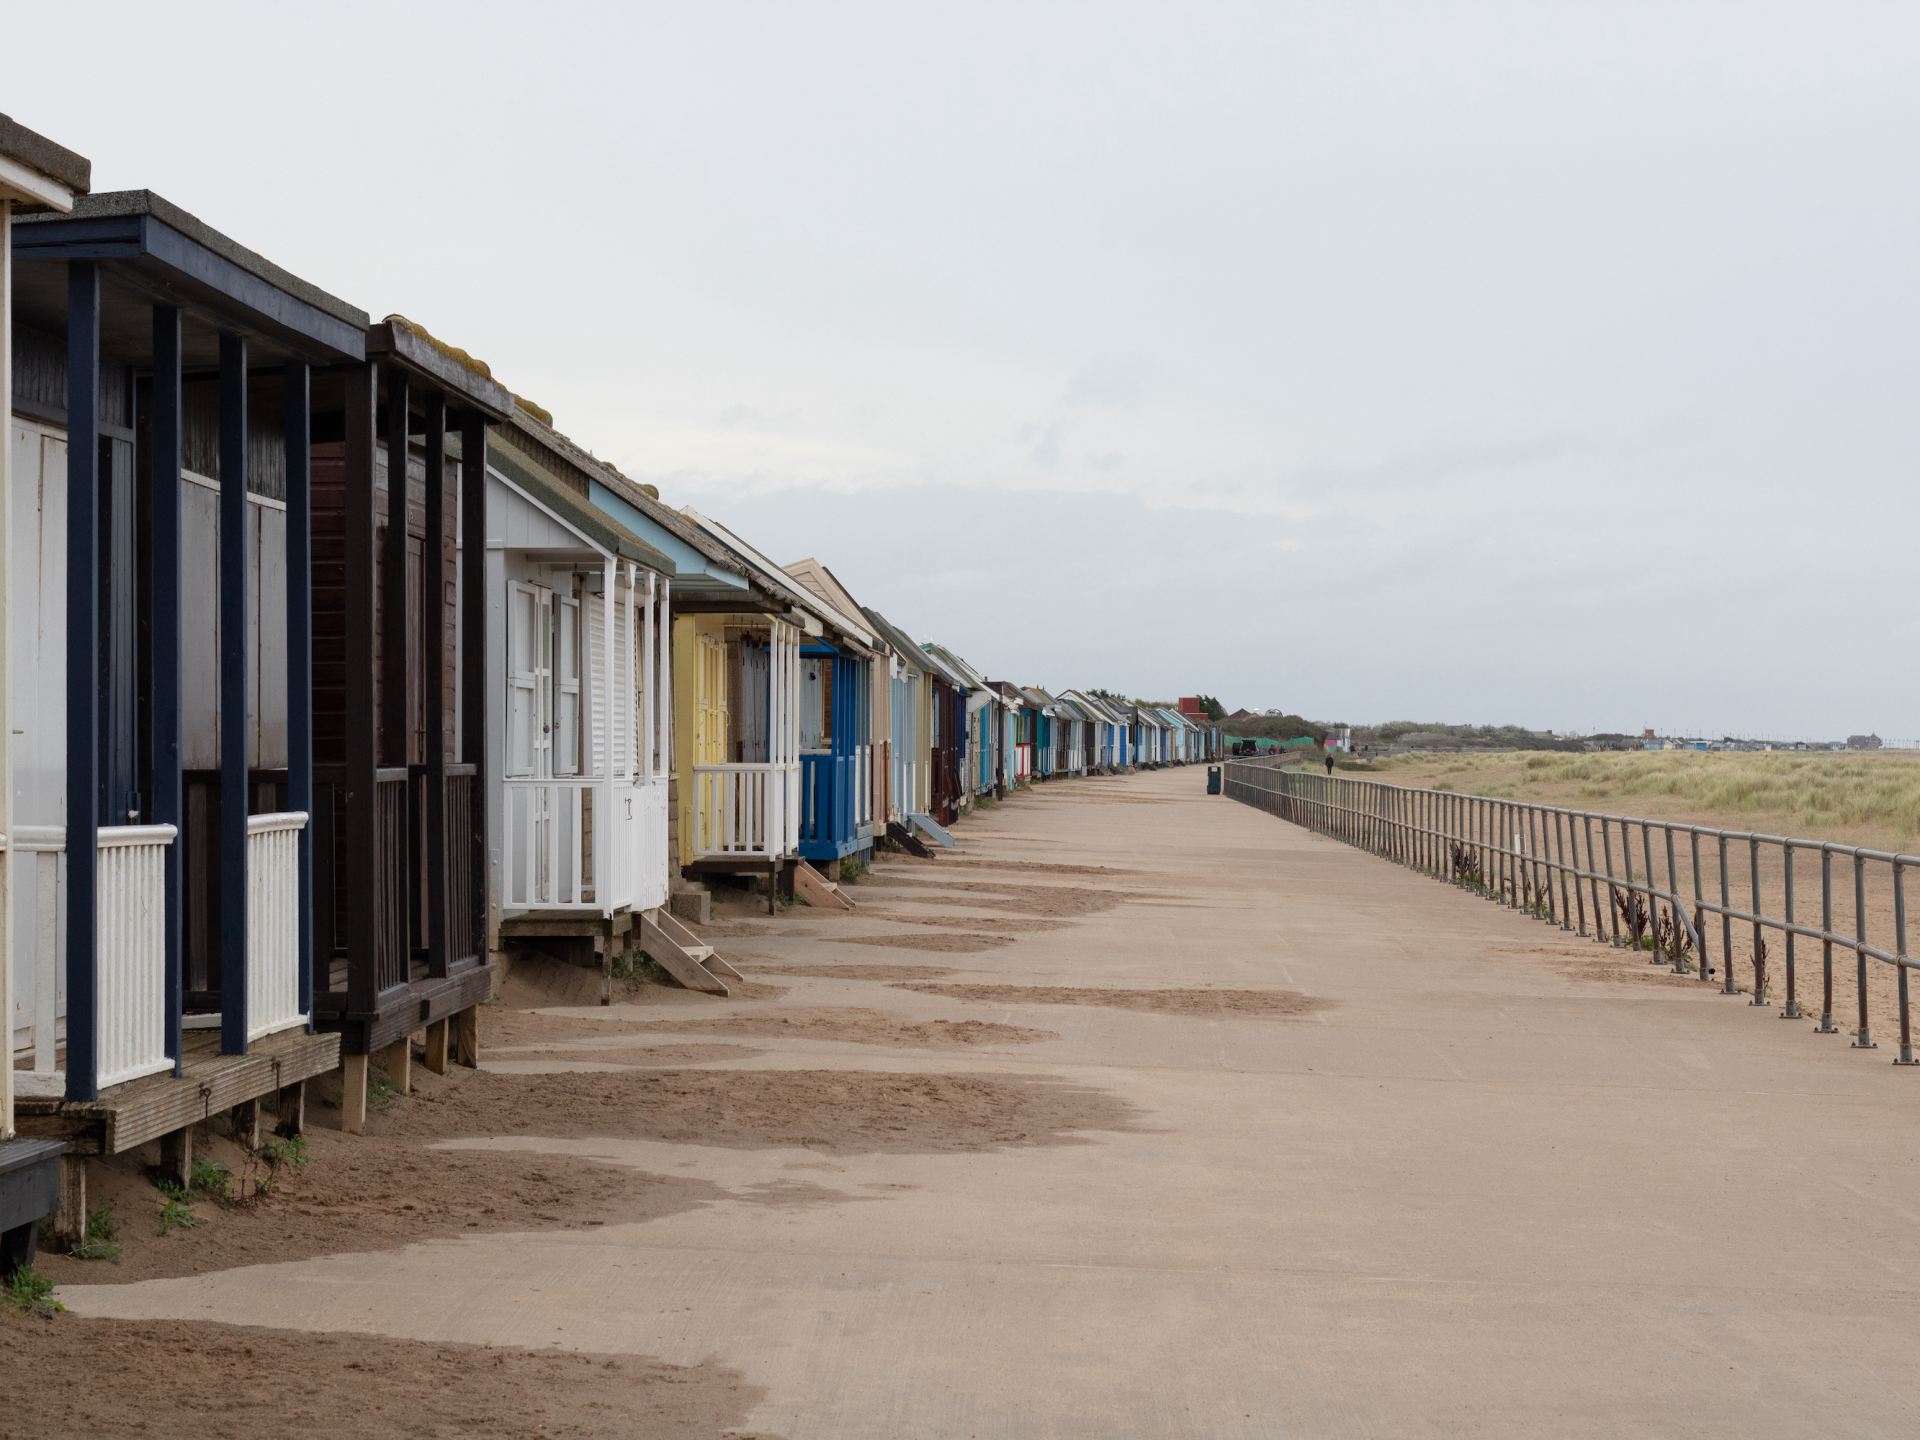 a row of beach houses